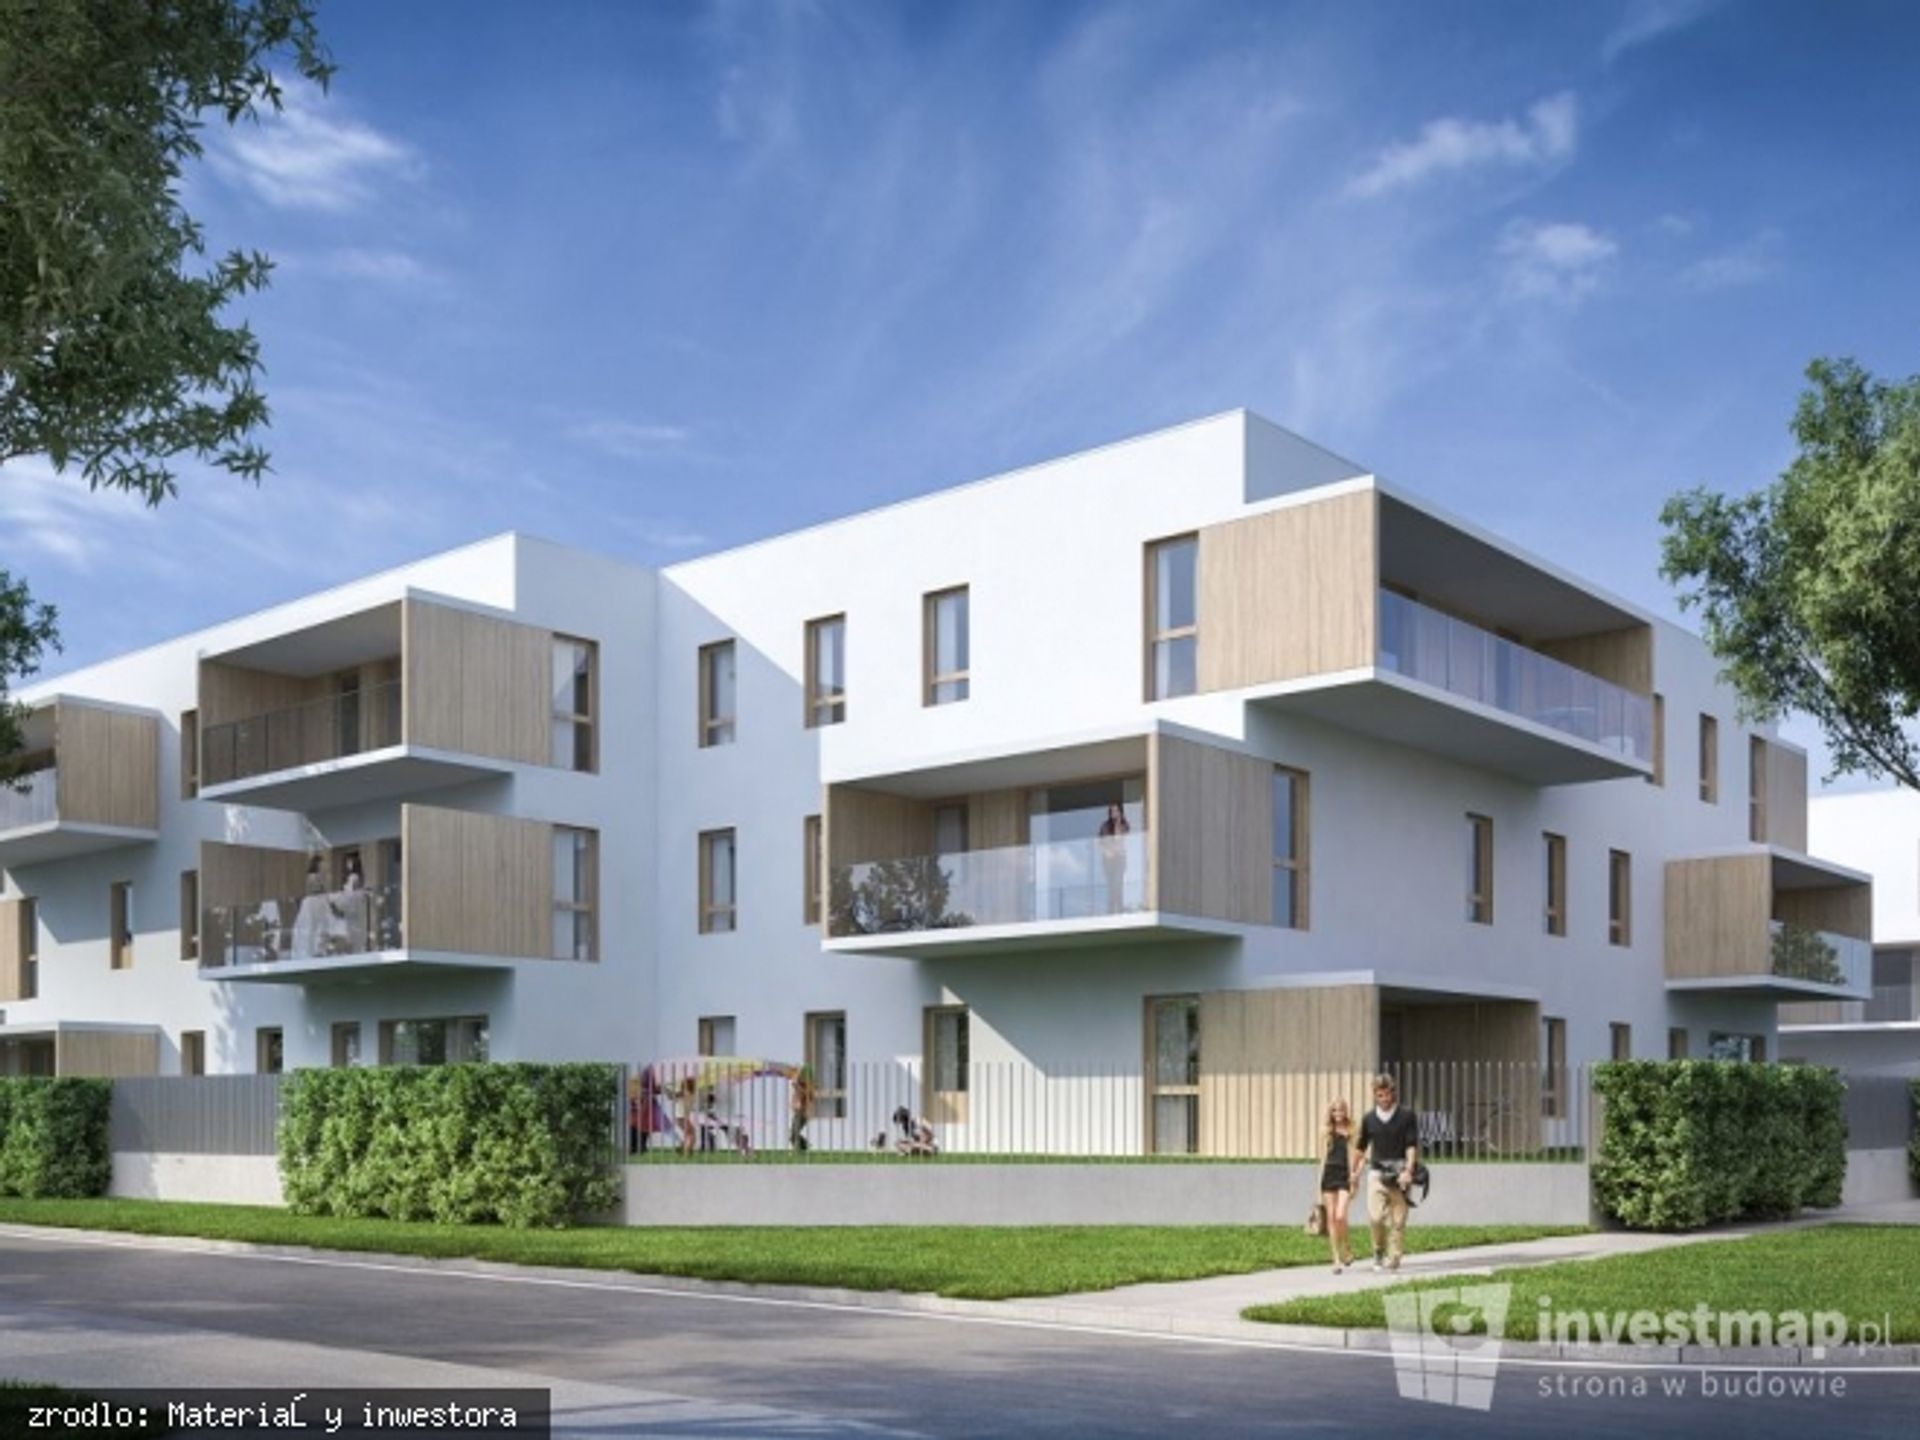  Matexi Polska rozpoczyna budowę inwestycji „Apartamenty Marymont”, 94 nowe lokale trafią do oferty dewelopera